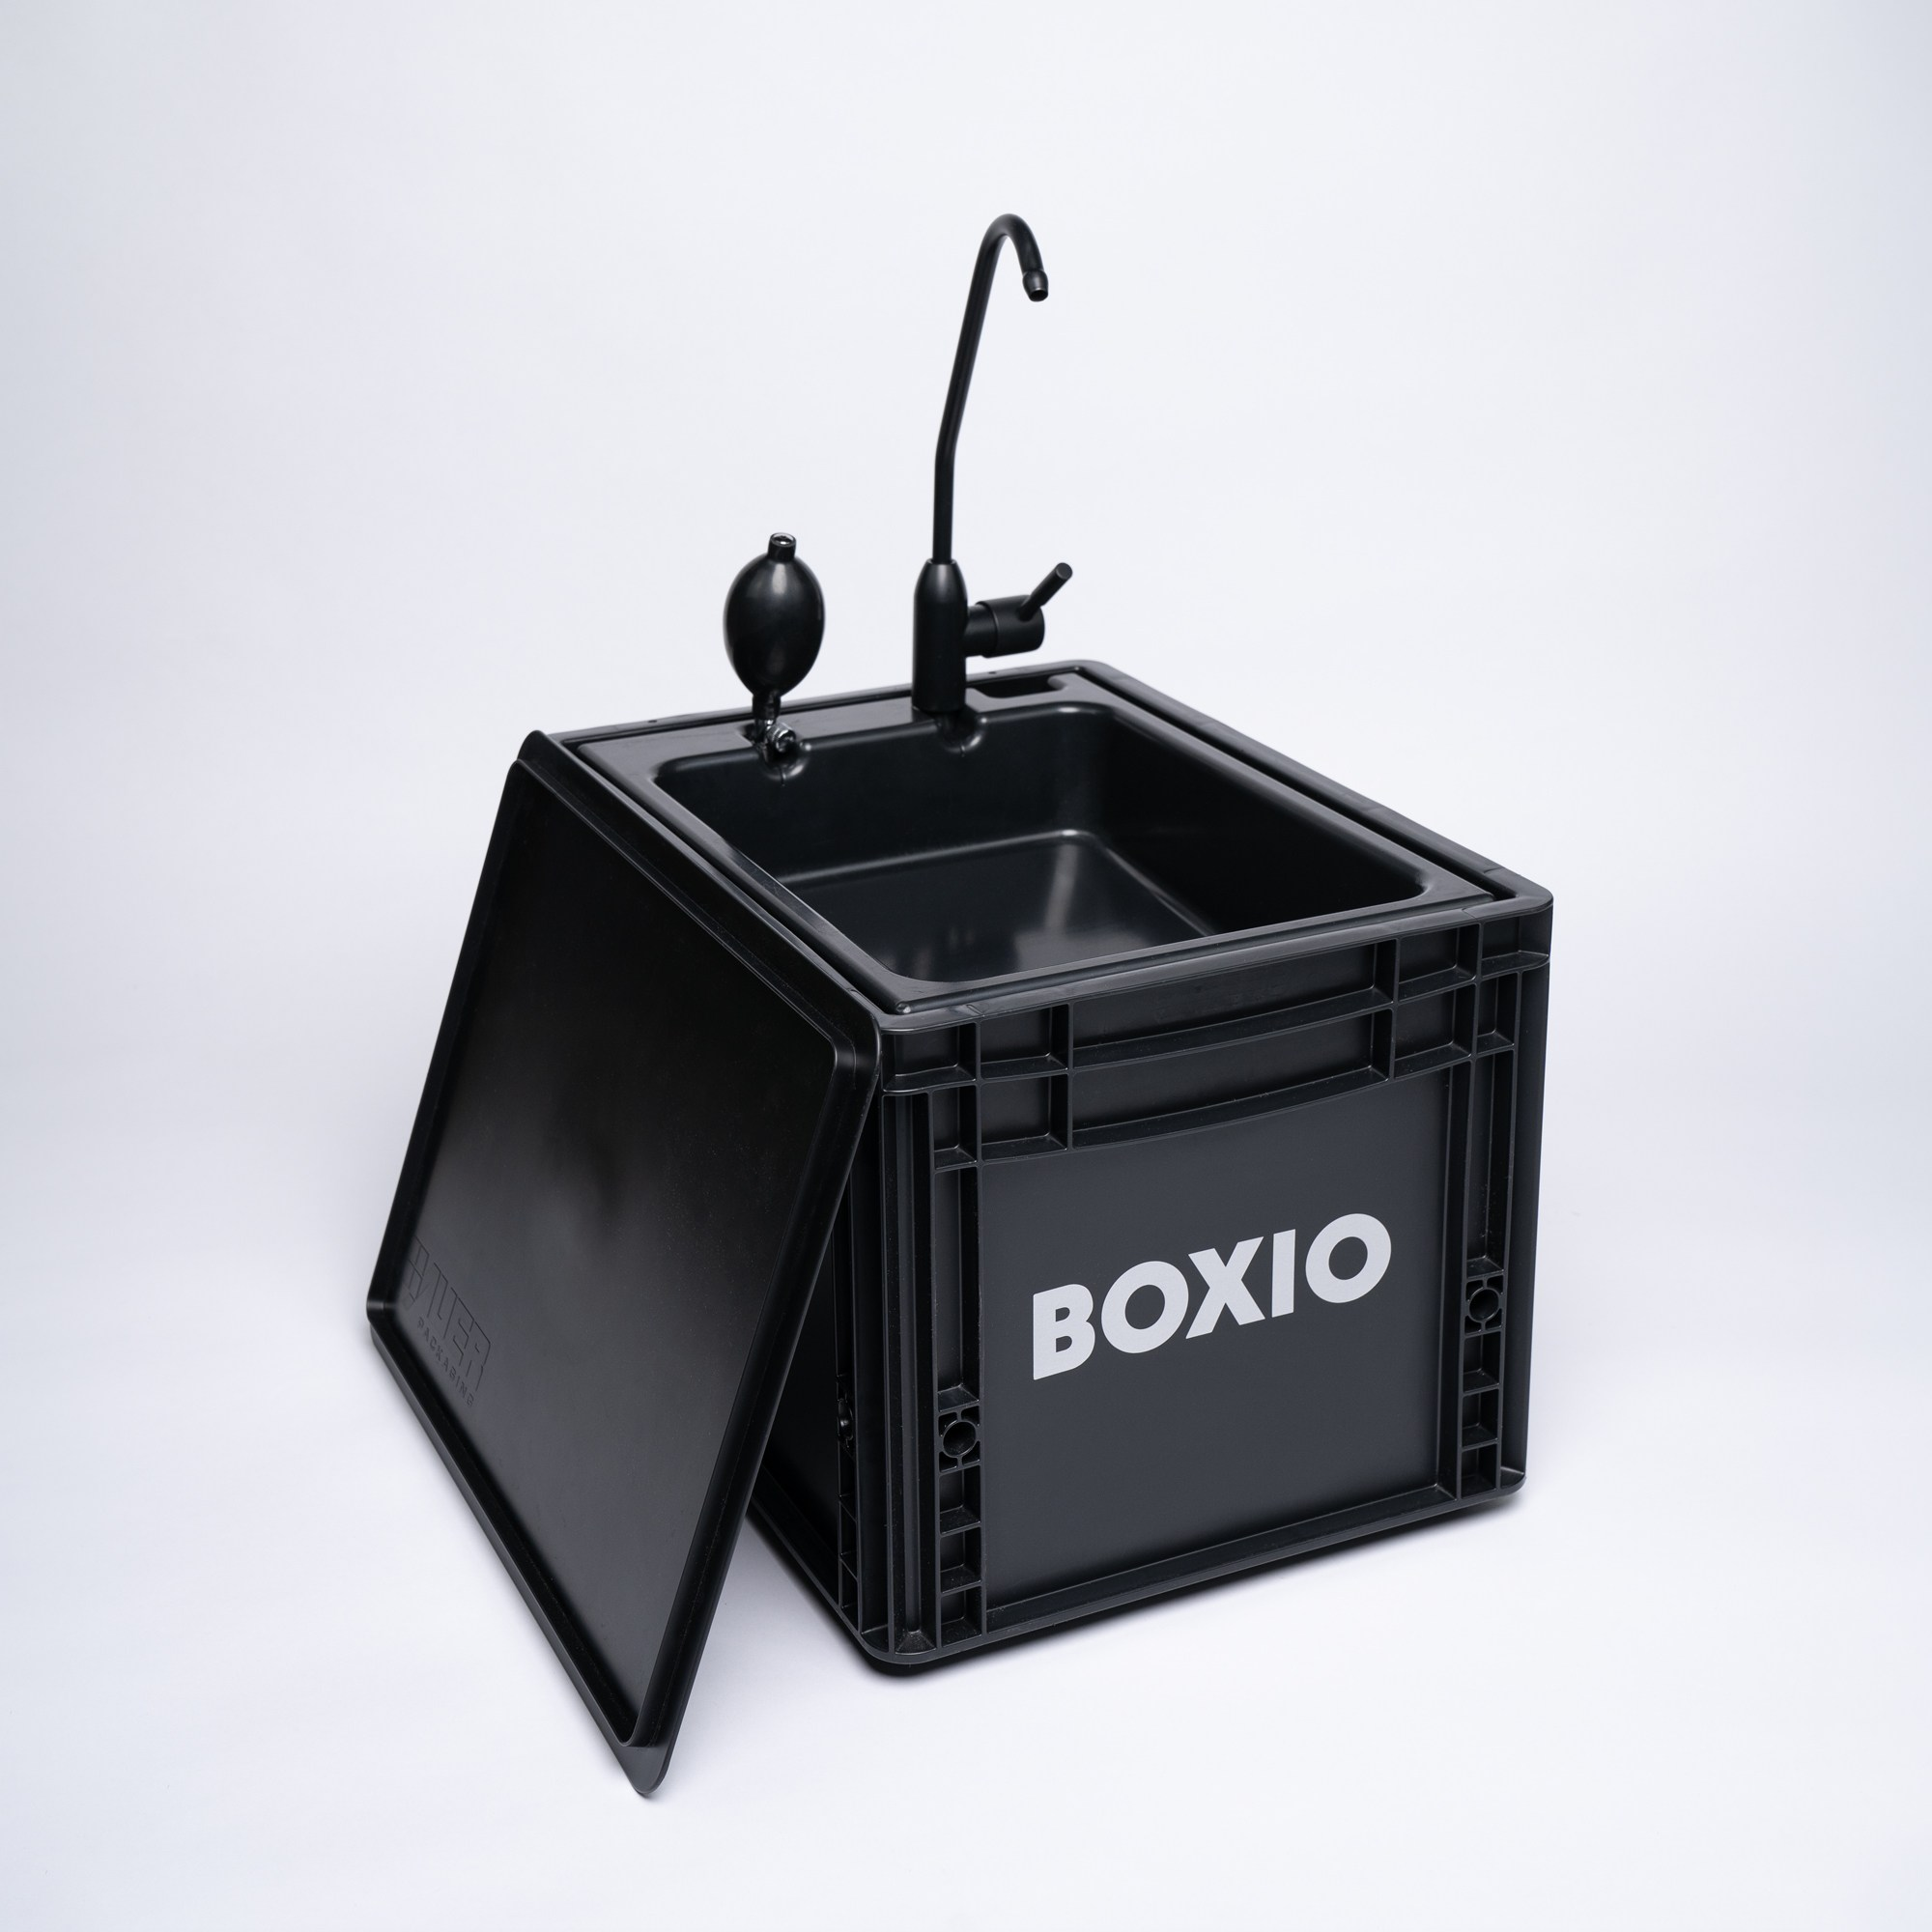 BOXIO-Wash widok kompletny: czarny Eurobox ze złożoną pokrywą, pompą i kranem